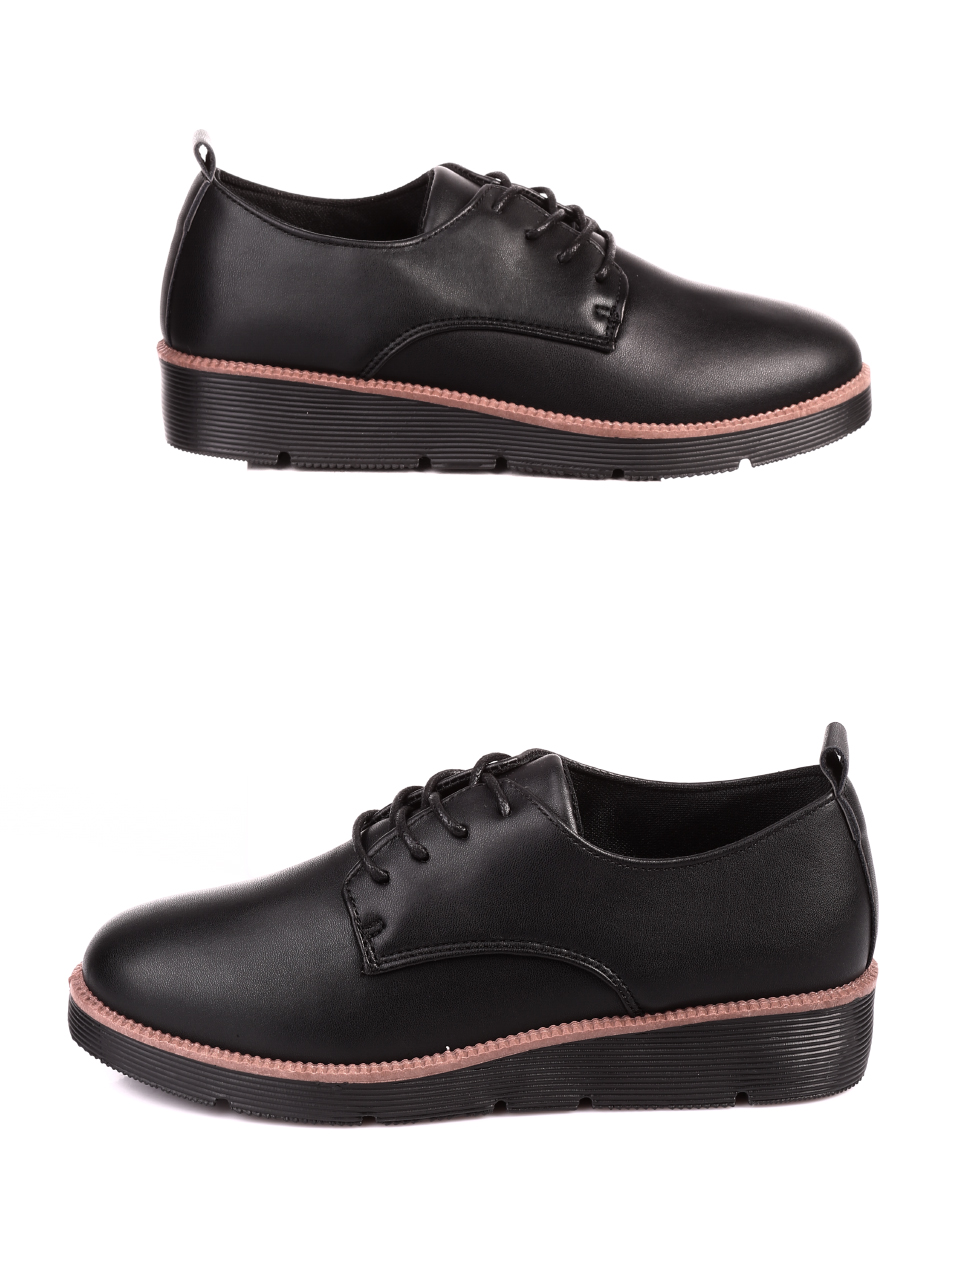 Ежедневни дамски обувки в черно 3U-20613 black pu